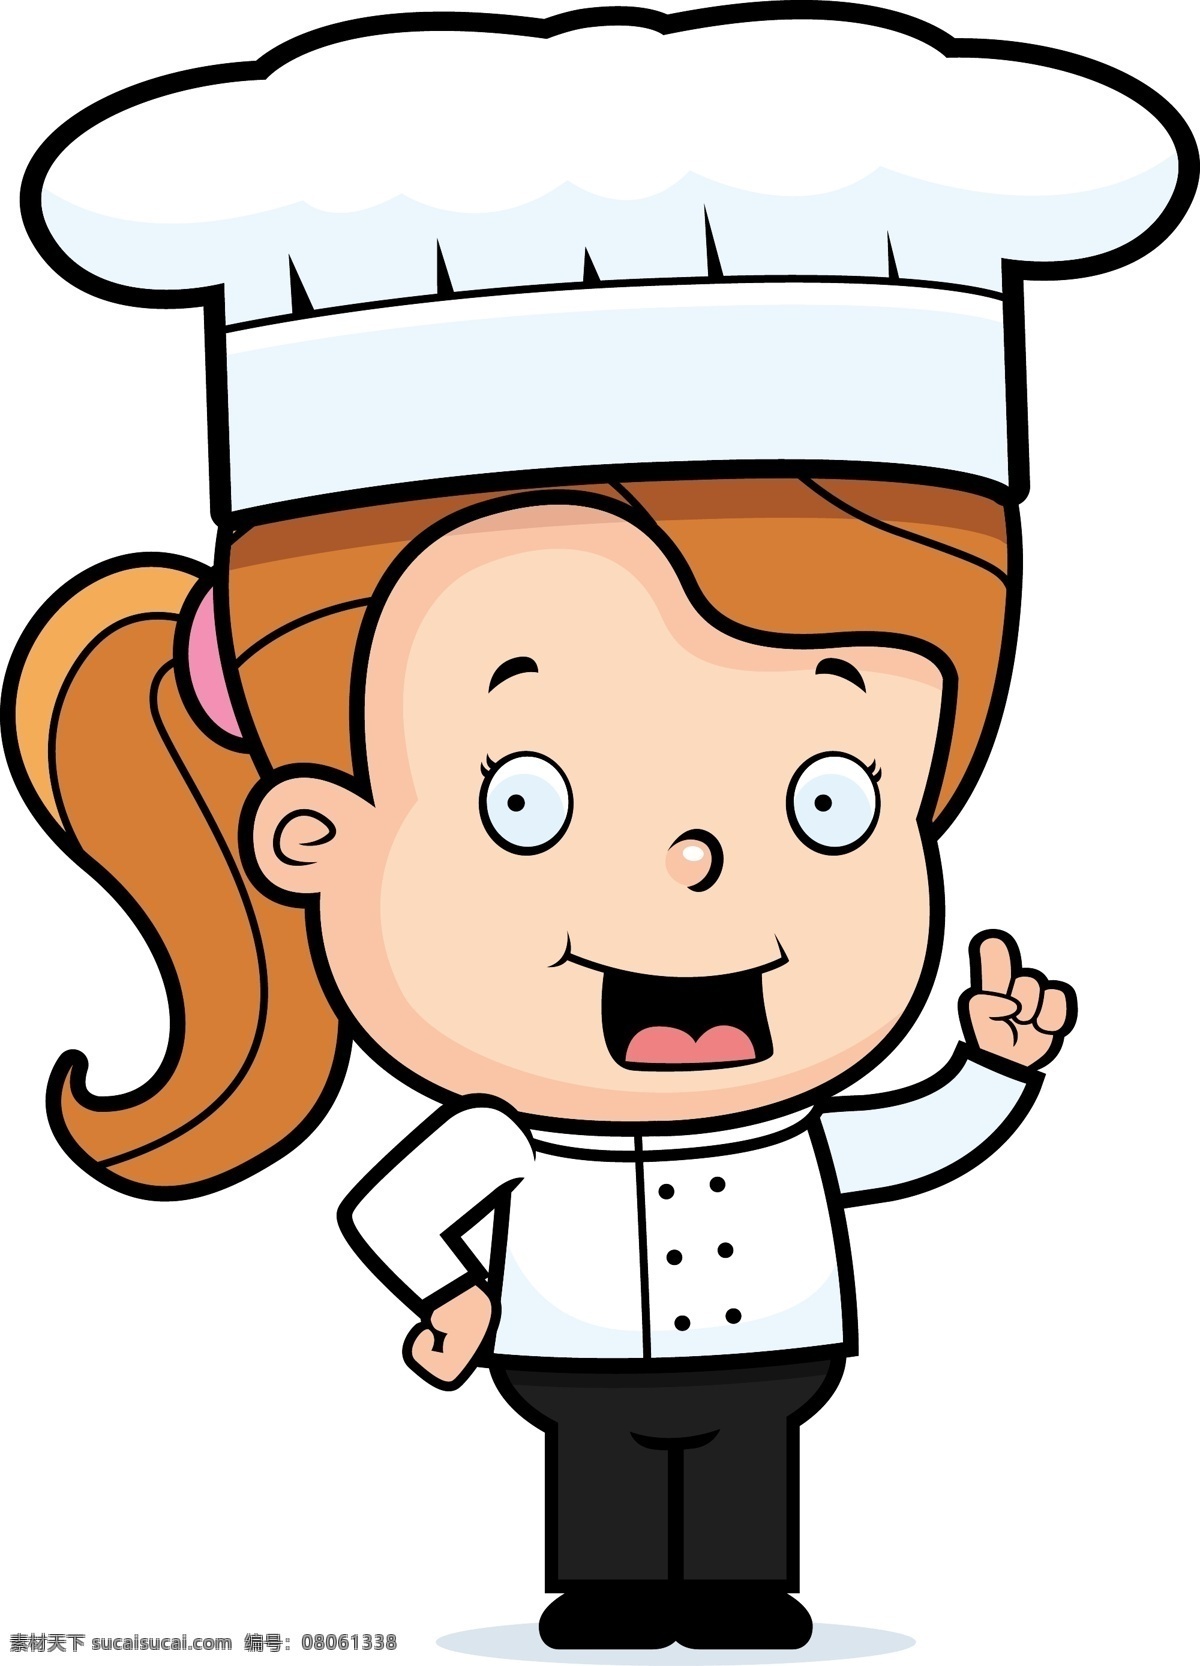 戴 厨师 帽 女 卡通 矢量 女厨师 女人 马尾 站着 插腰 帽子 讲话 厨师帽 插图 微笑 动漫动画 动漫人物